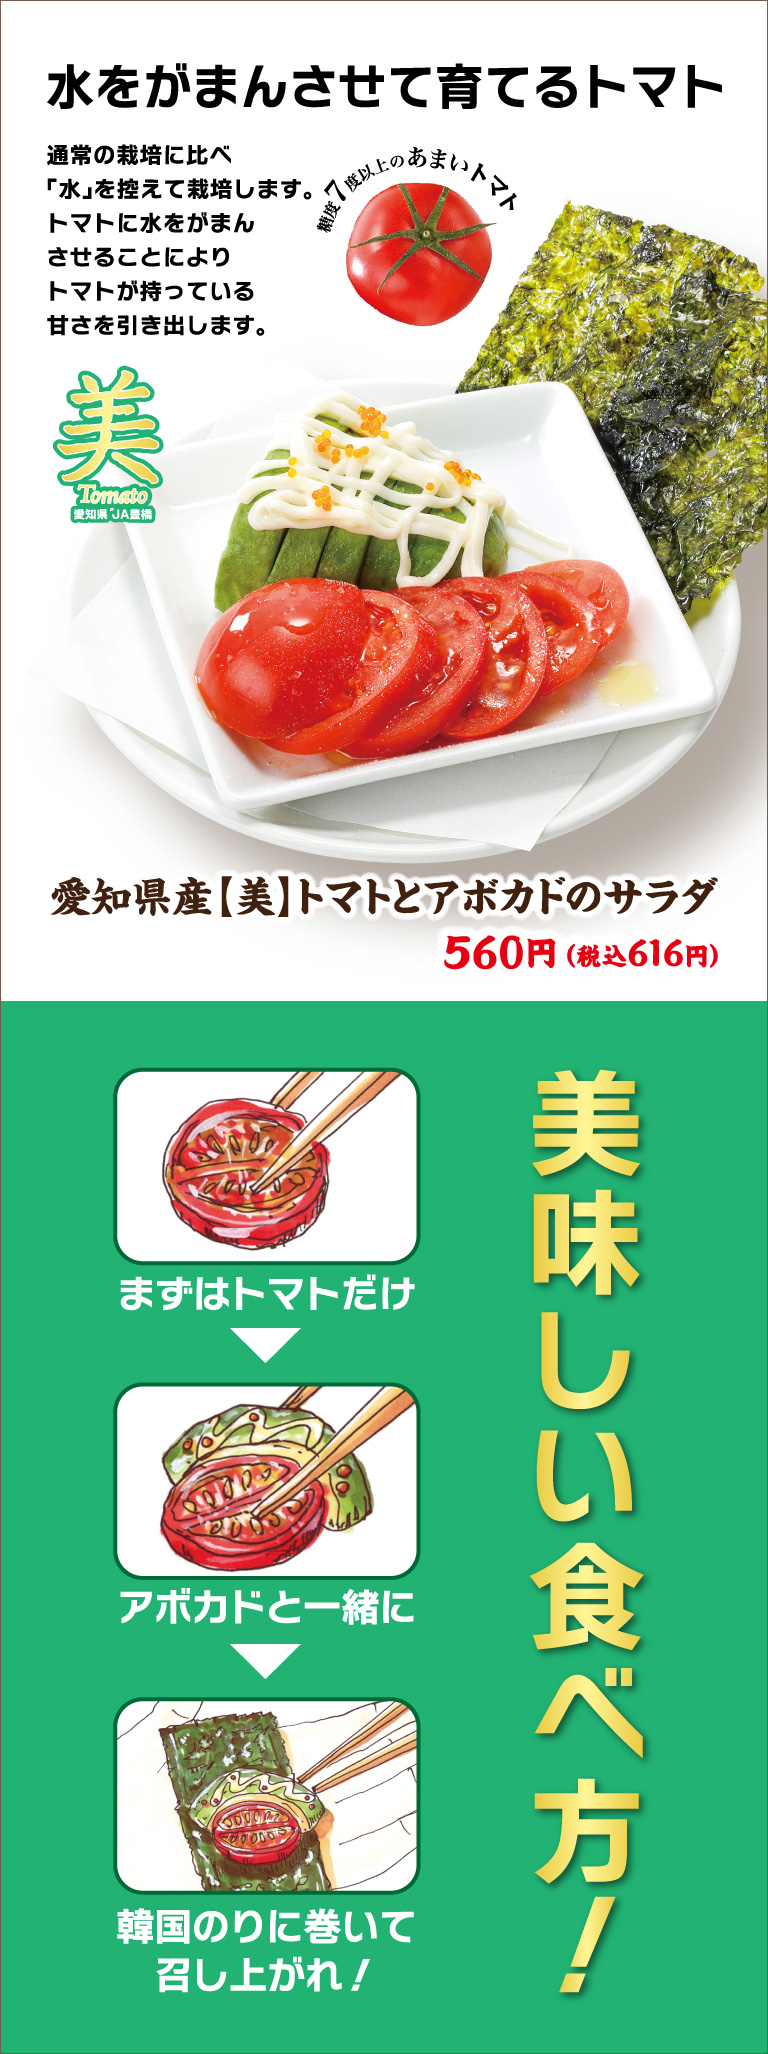 爱知县产 【美】 番茄和鳄梨沙拉